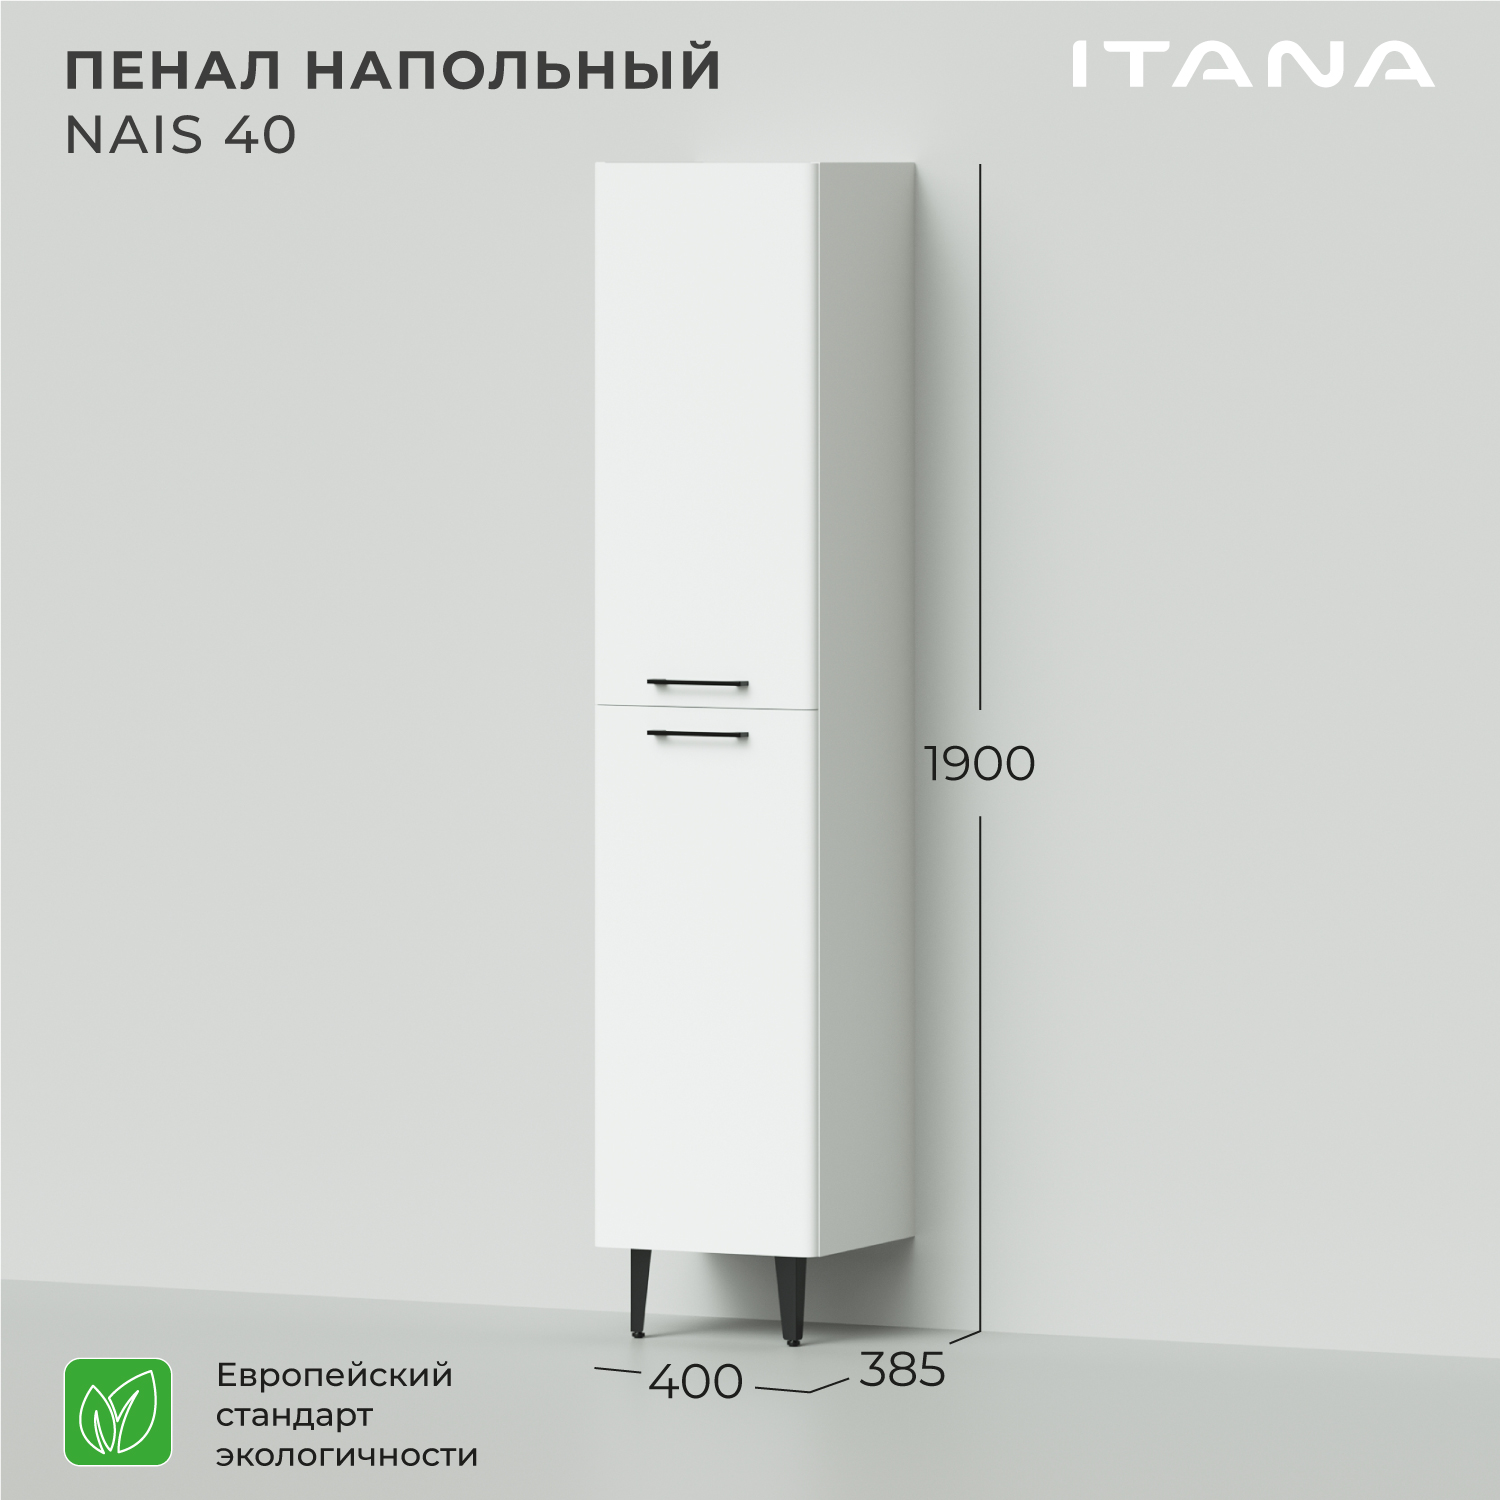 Пенал напольный Итана Nais 40 400х385х1900 шкаф пенал для ванной и туалета белый напольный kuboxy st8018 18х19 5х80 см